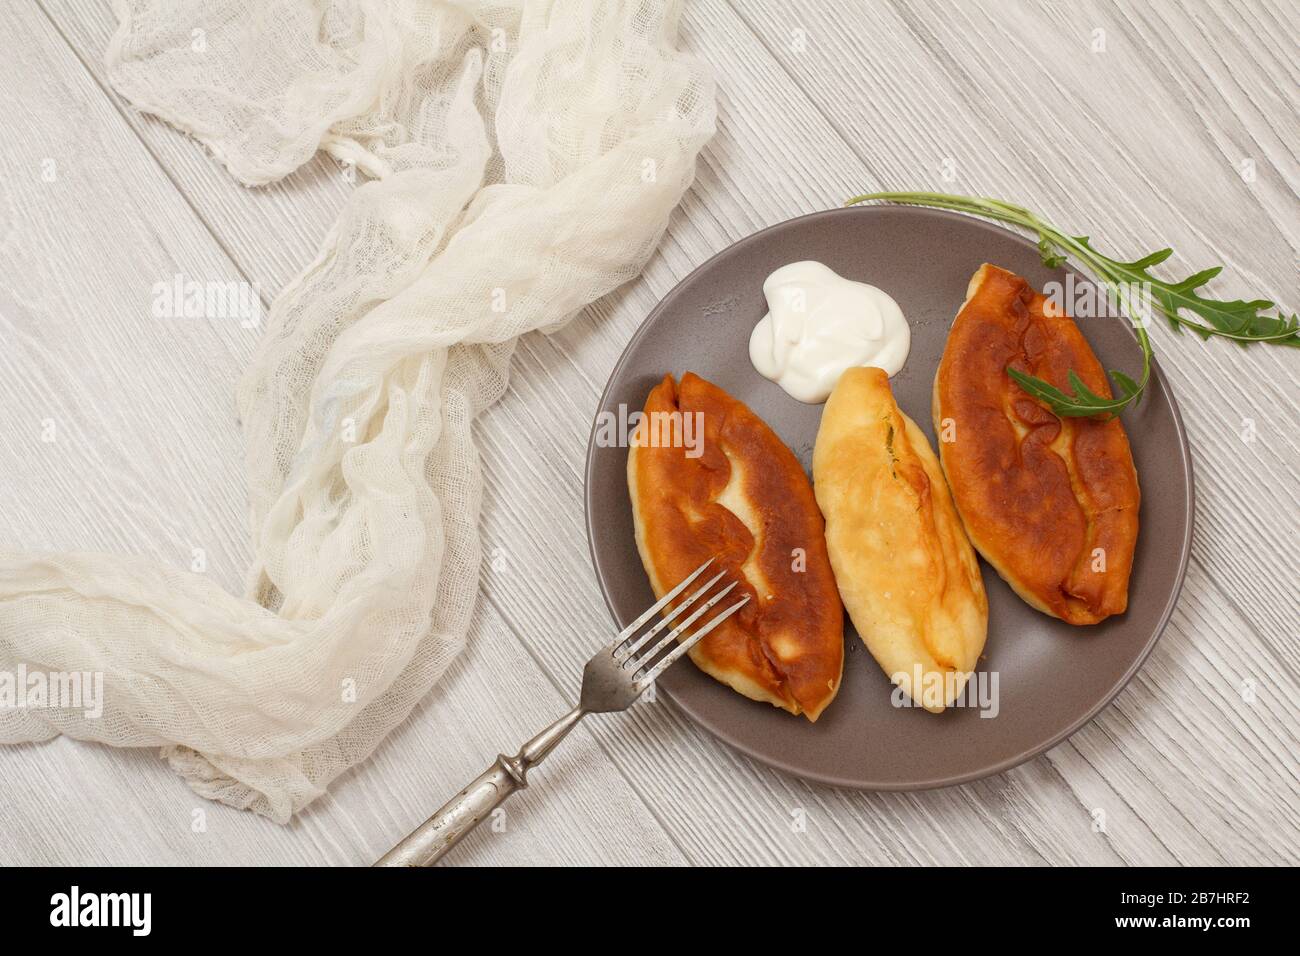 Plaque avec tartes fries, crème aigre et fourchette, gaze blanche sur planches en bois. Vue de dessus. Banque D'Images